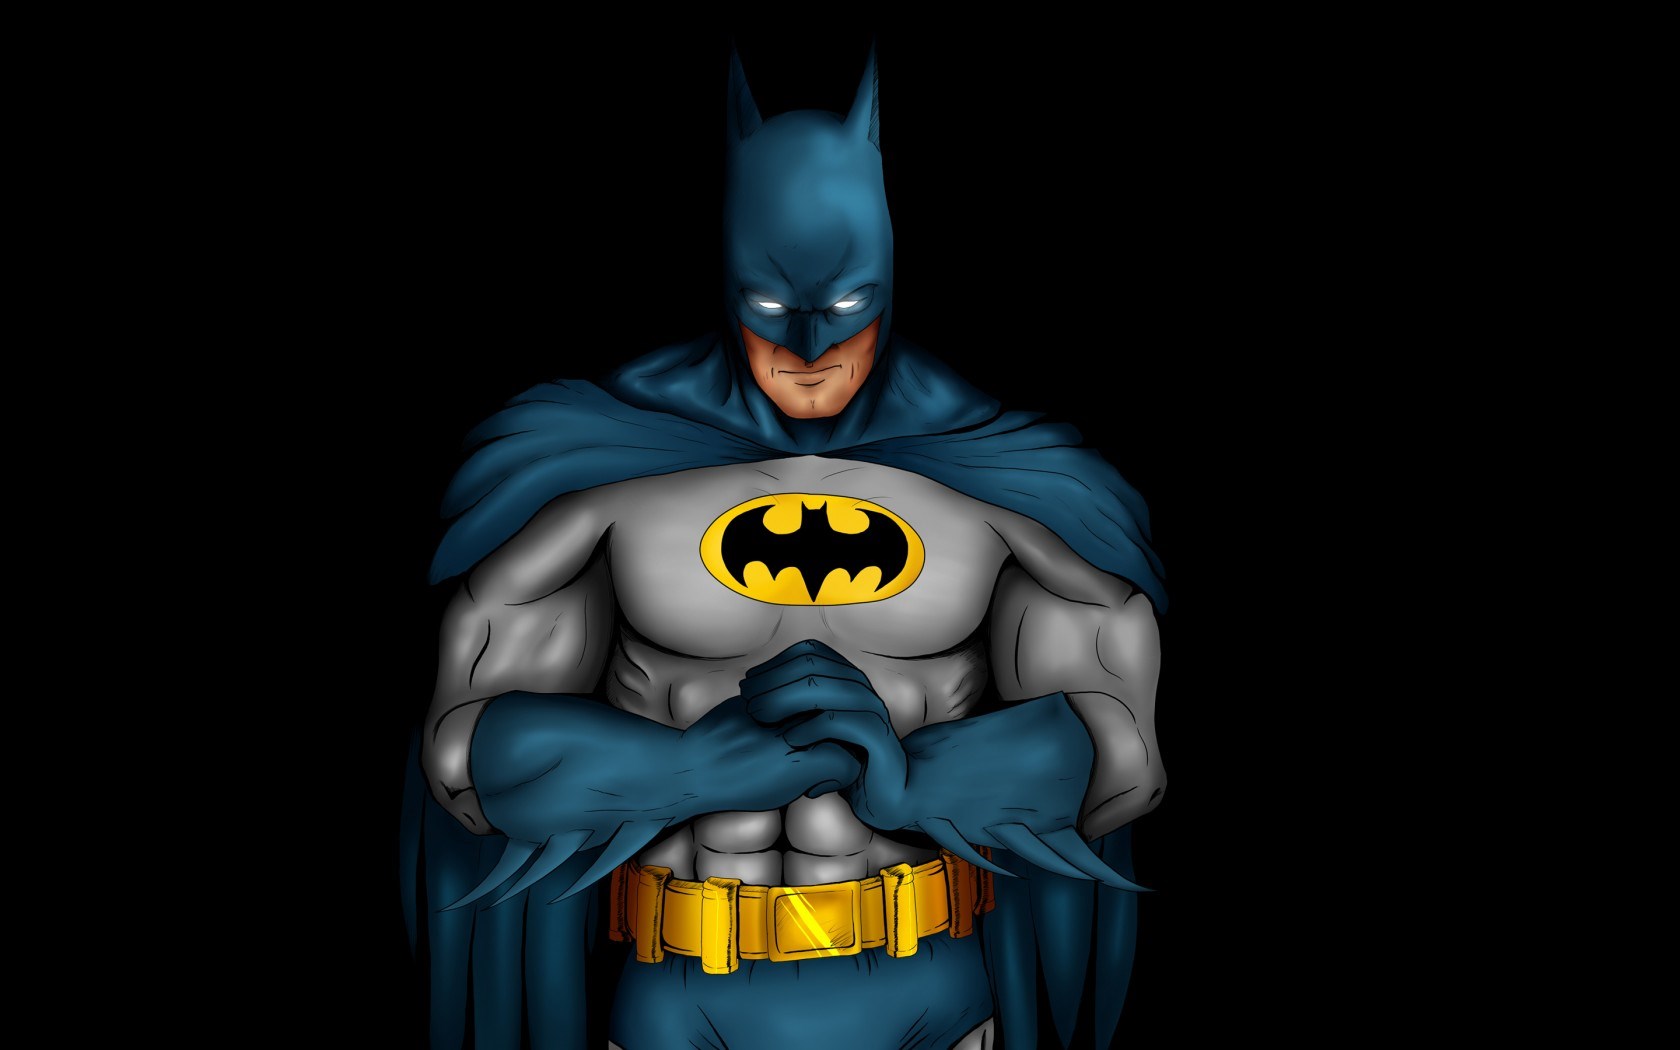 75+] Batman Cartoon Wallpaper - WallpaperSafari